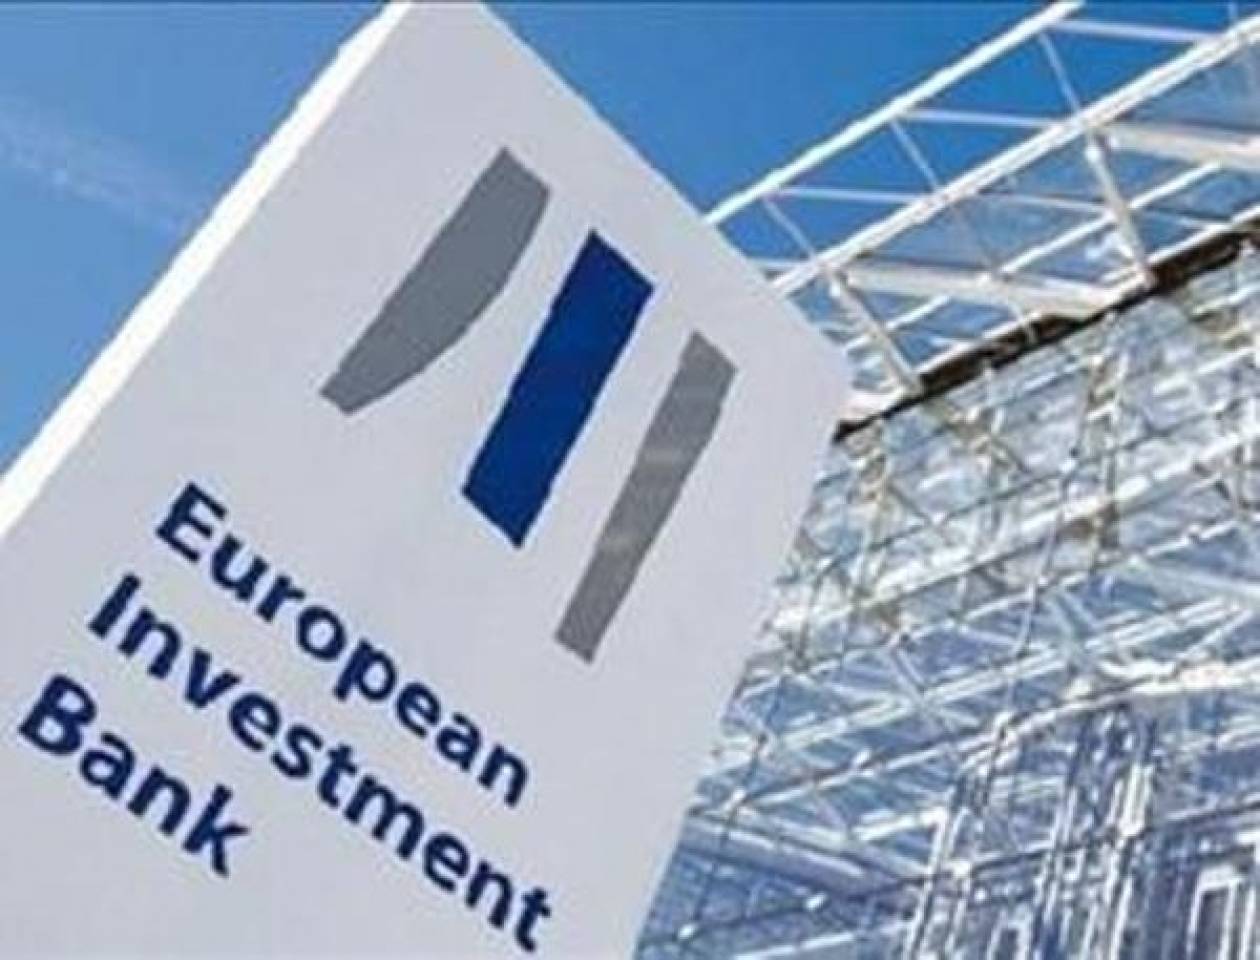 Εκταμίευση κονδυλίων 750,5 εκατ. ευρώ για την Ελλάδα από την ΕΤEπ